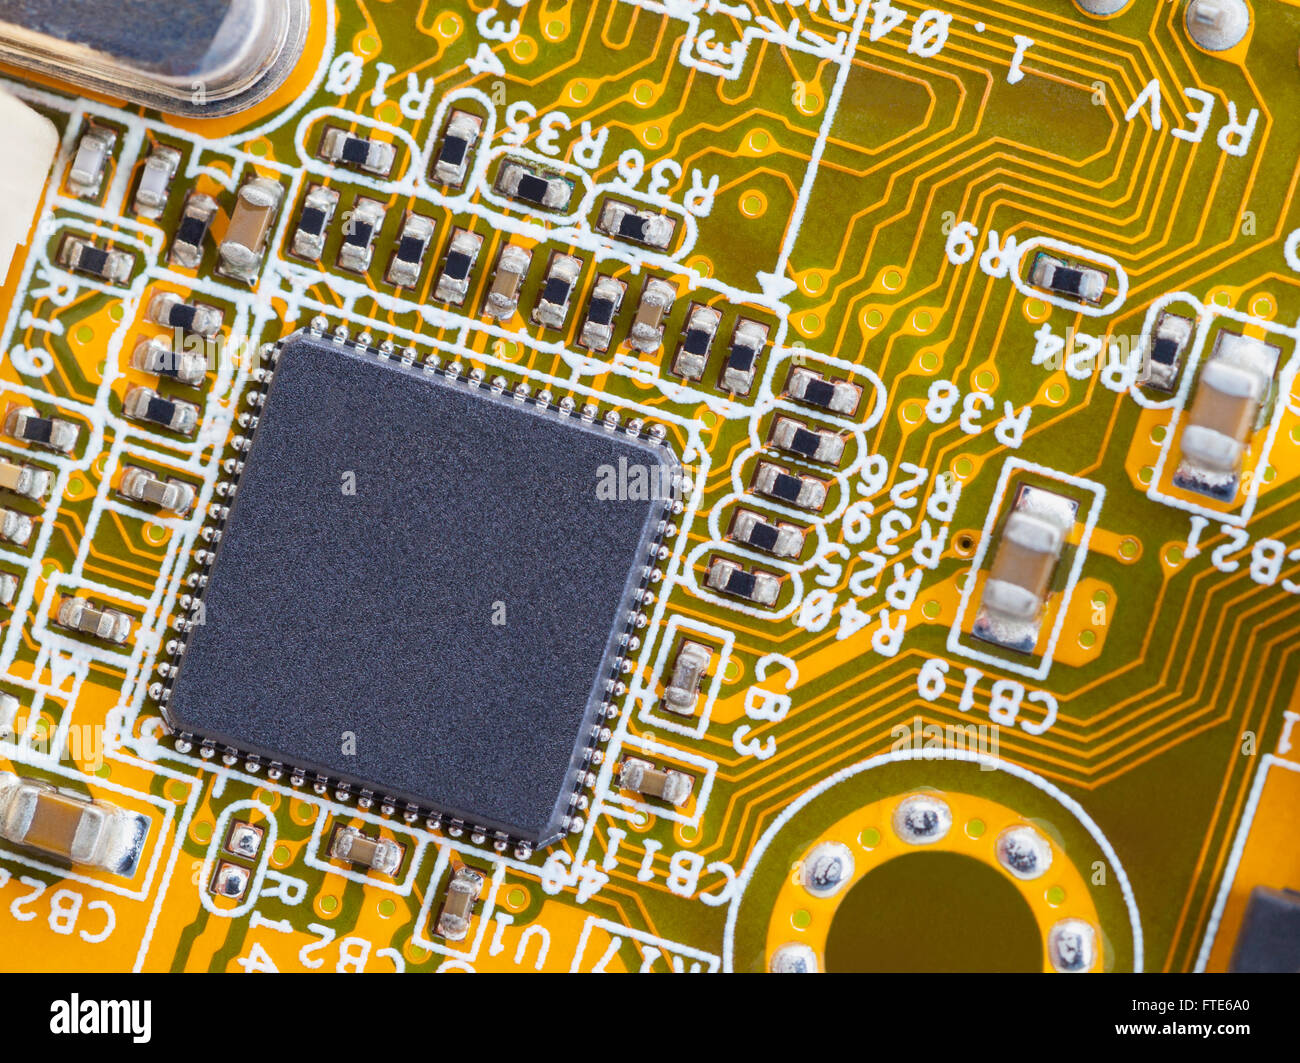 Cerca de Microchip en la placa de circuito verde amarillo. Foto de stock